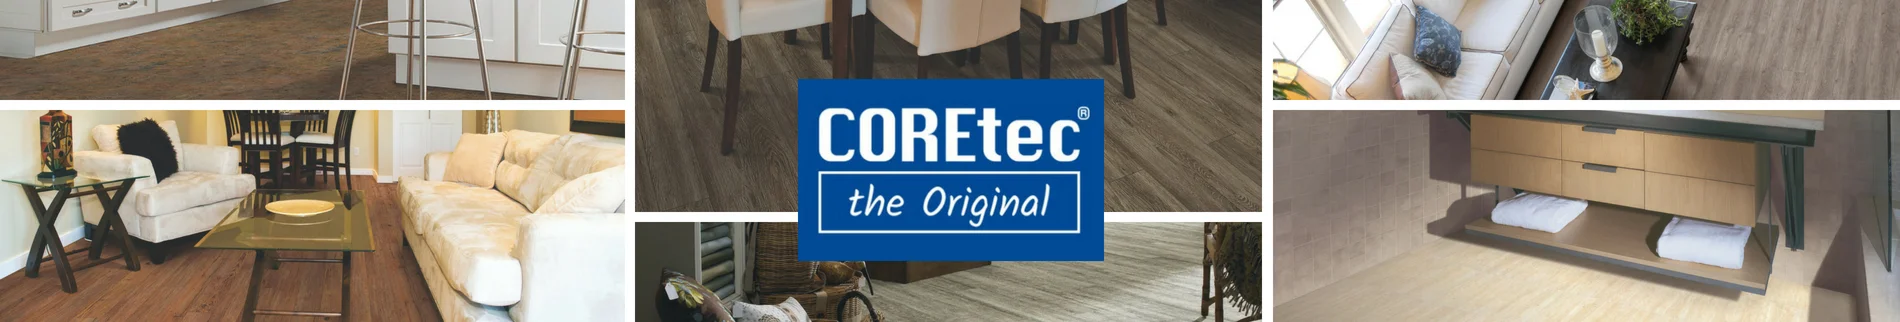 coretec flooring room scenes